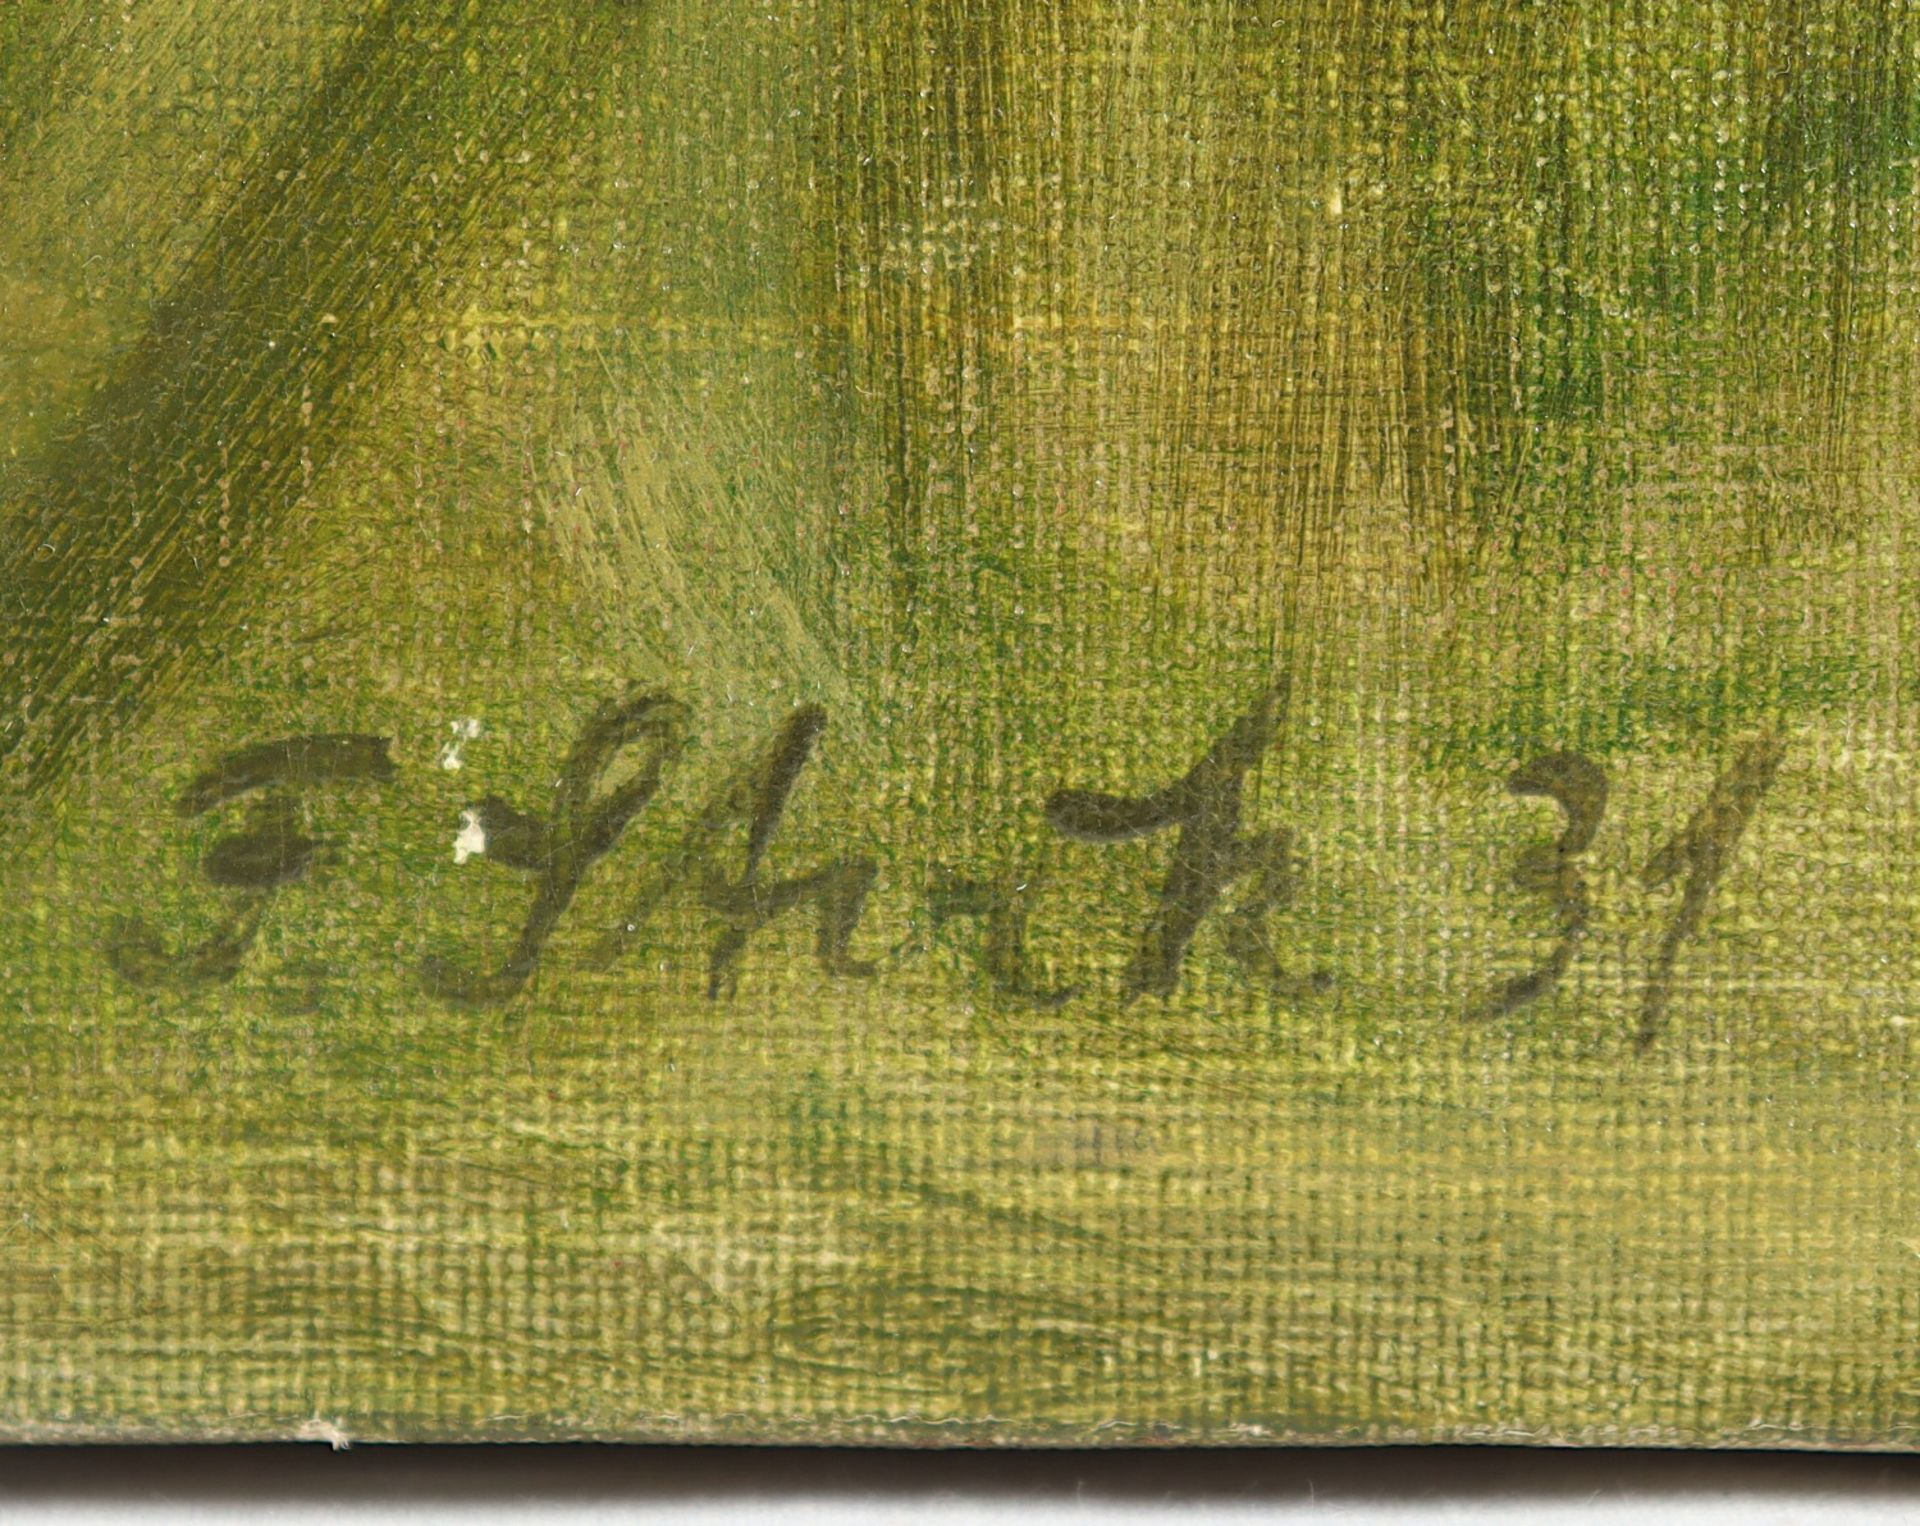 STOCK, Franz (1896-1970), "Liegendes - Bild 3 aus 4